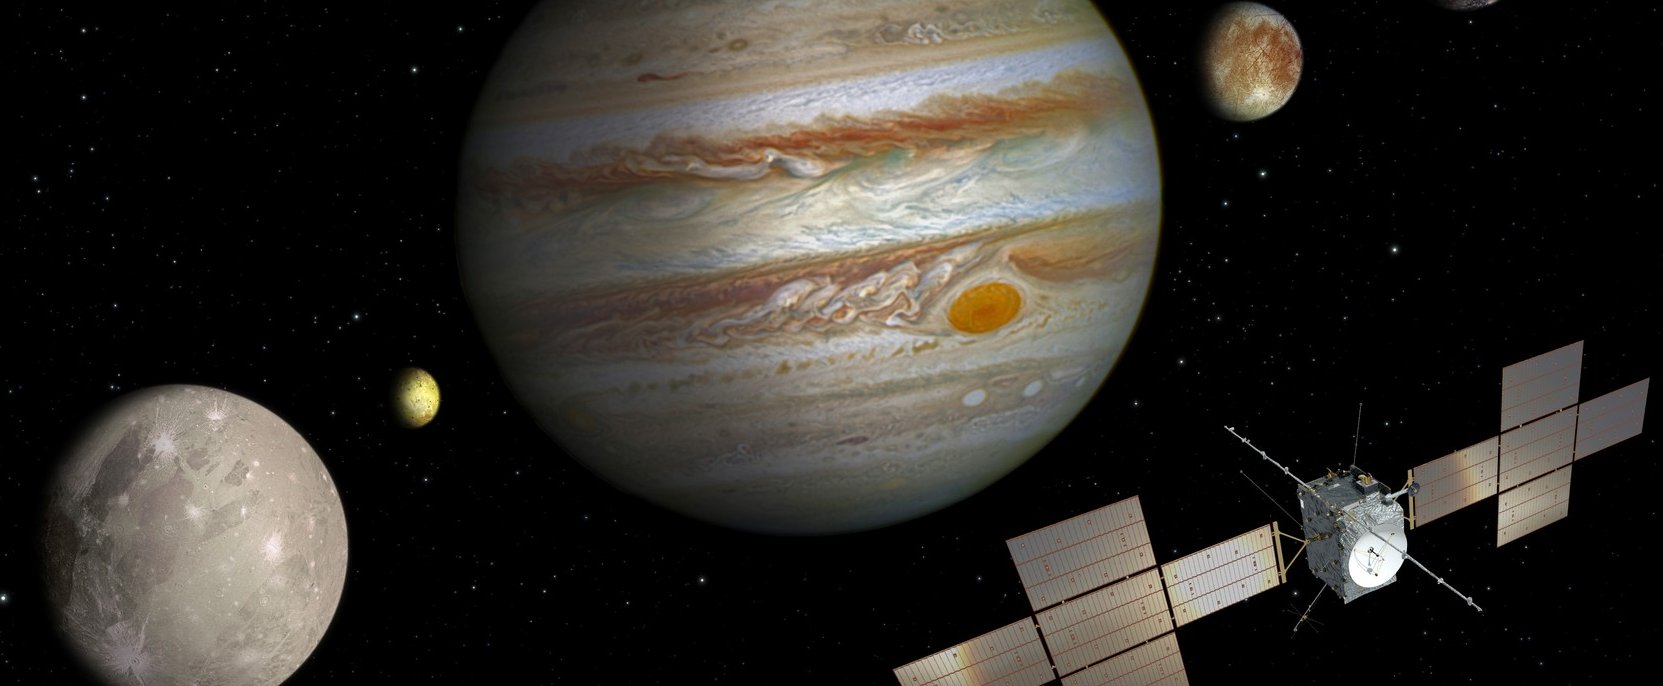 Lelepleződött a Jupiter rejtélye, a bolygó szemének nevezett jelenséget eddig félreismertük